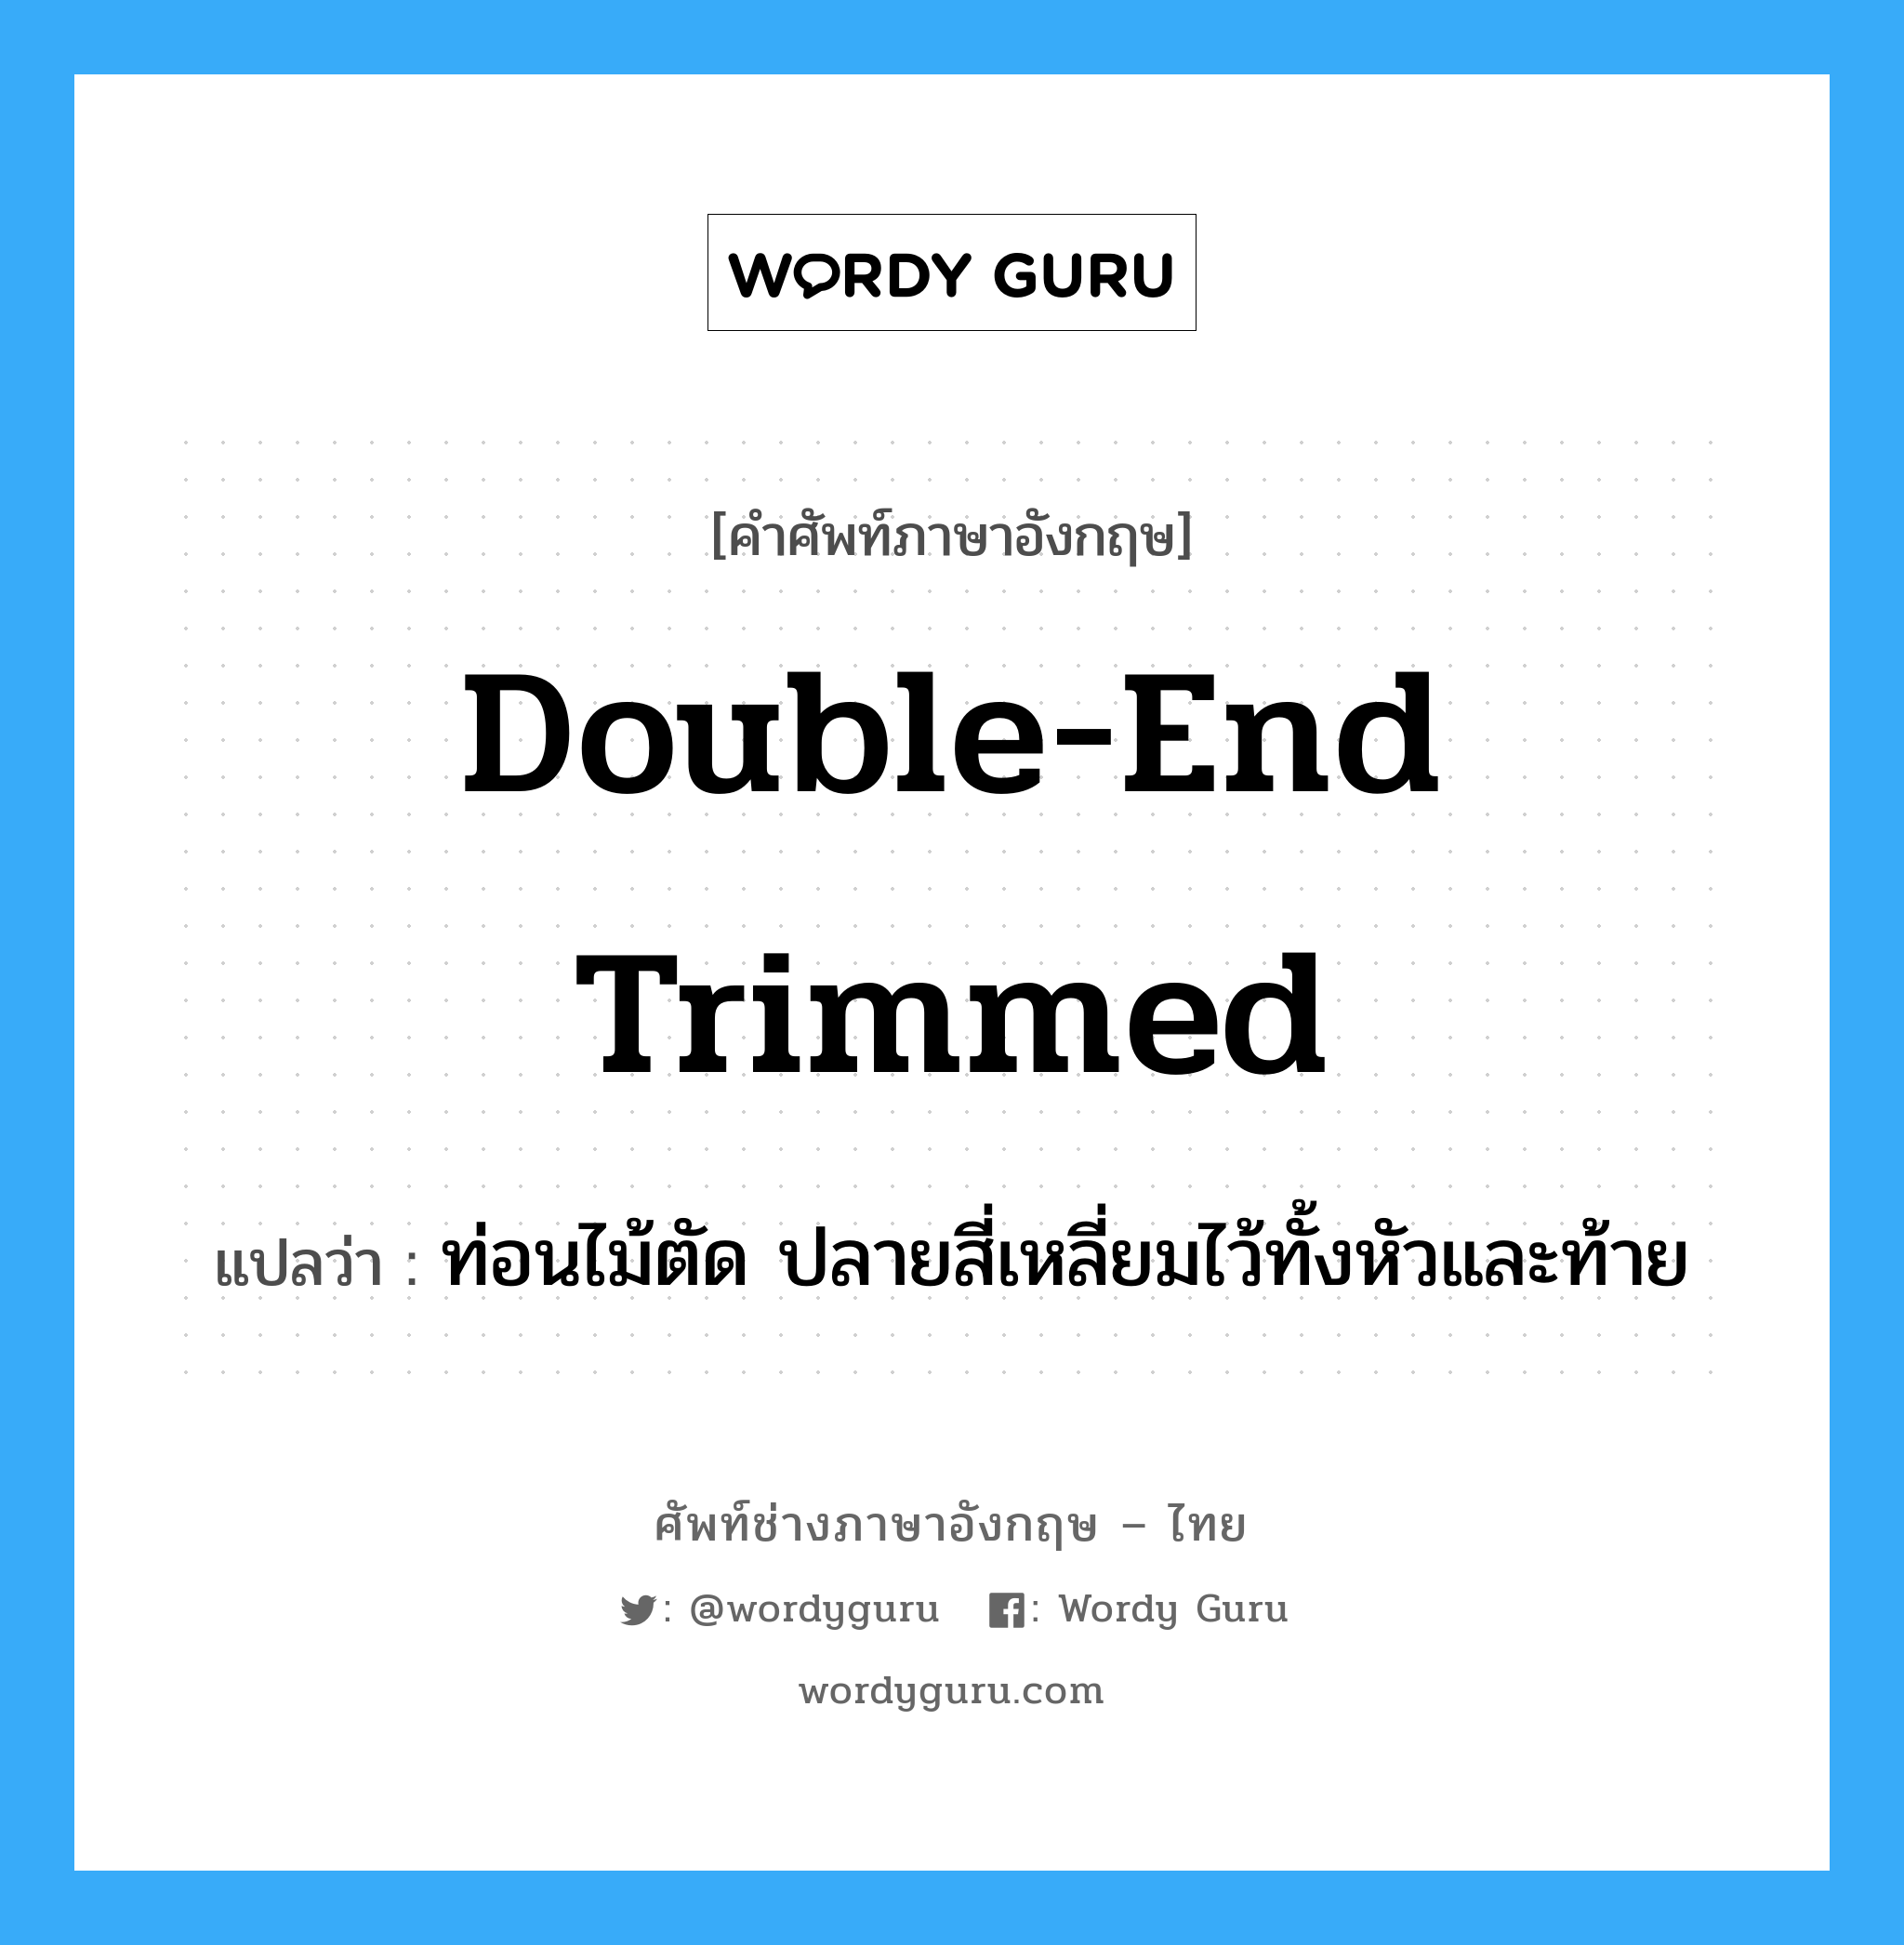 double-end trimmed แปลว่า?, คำศัพท์ช่างภาษาอังกฤษ - ไทย double-end trimmed คำศัพท์ภาษาอังกฤษ double-end trimmed แปลว่า ท่อนไม้ตัด ปลายสี่เหลี่ยมไว้ทั้งหัวและท้าย